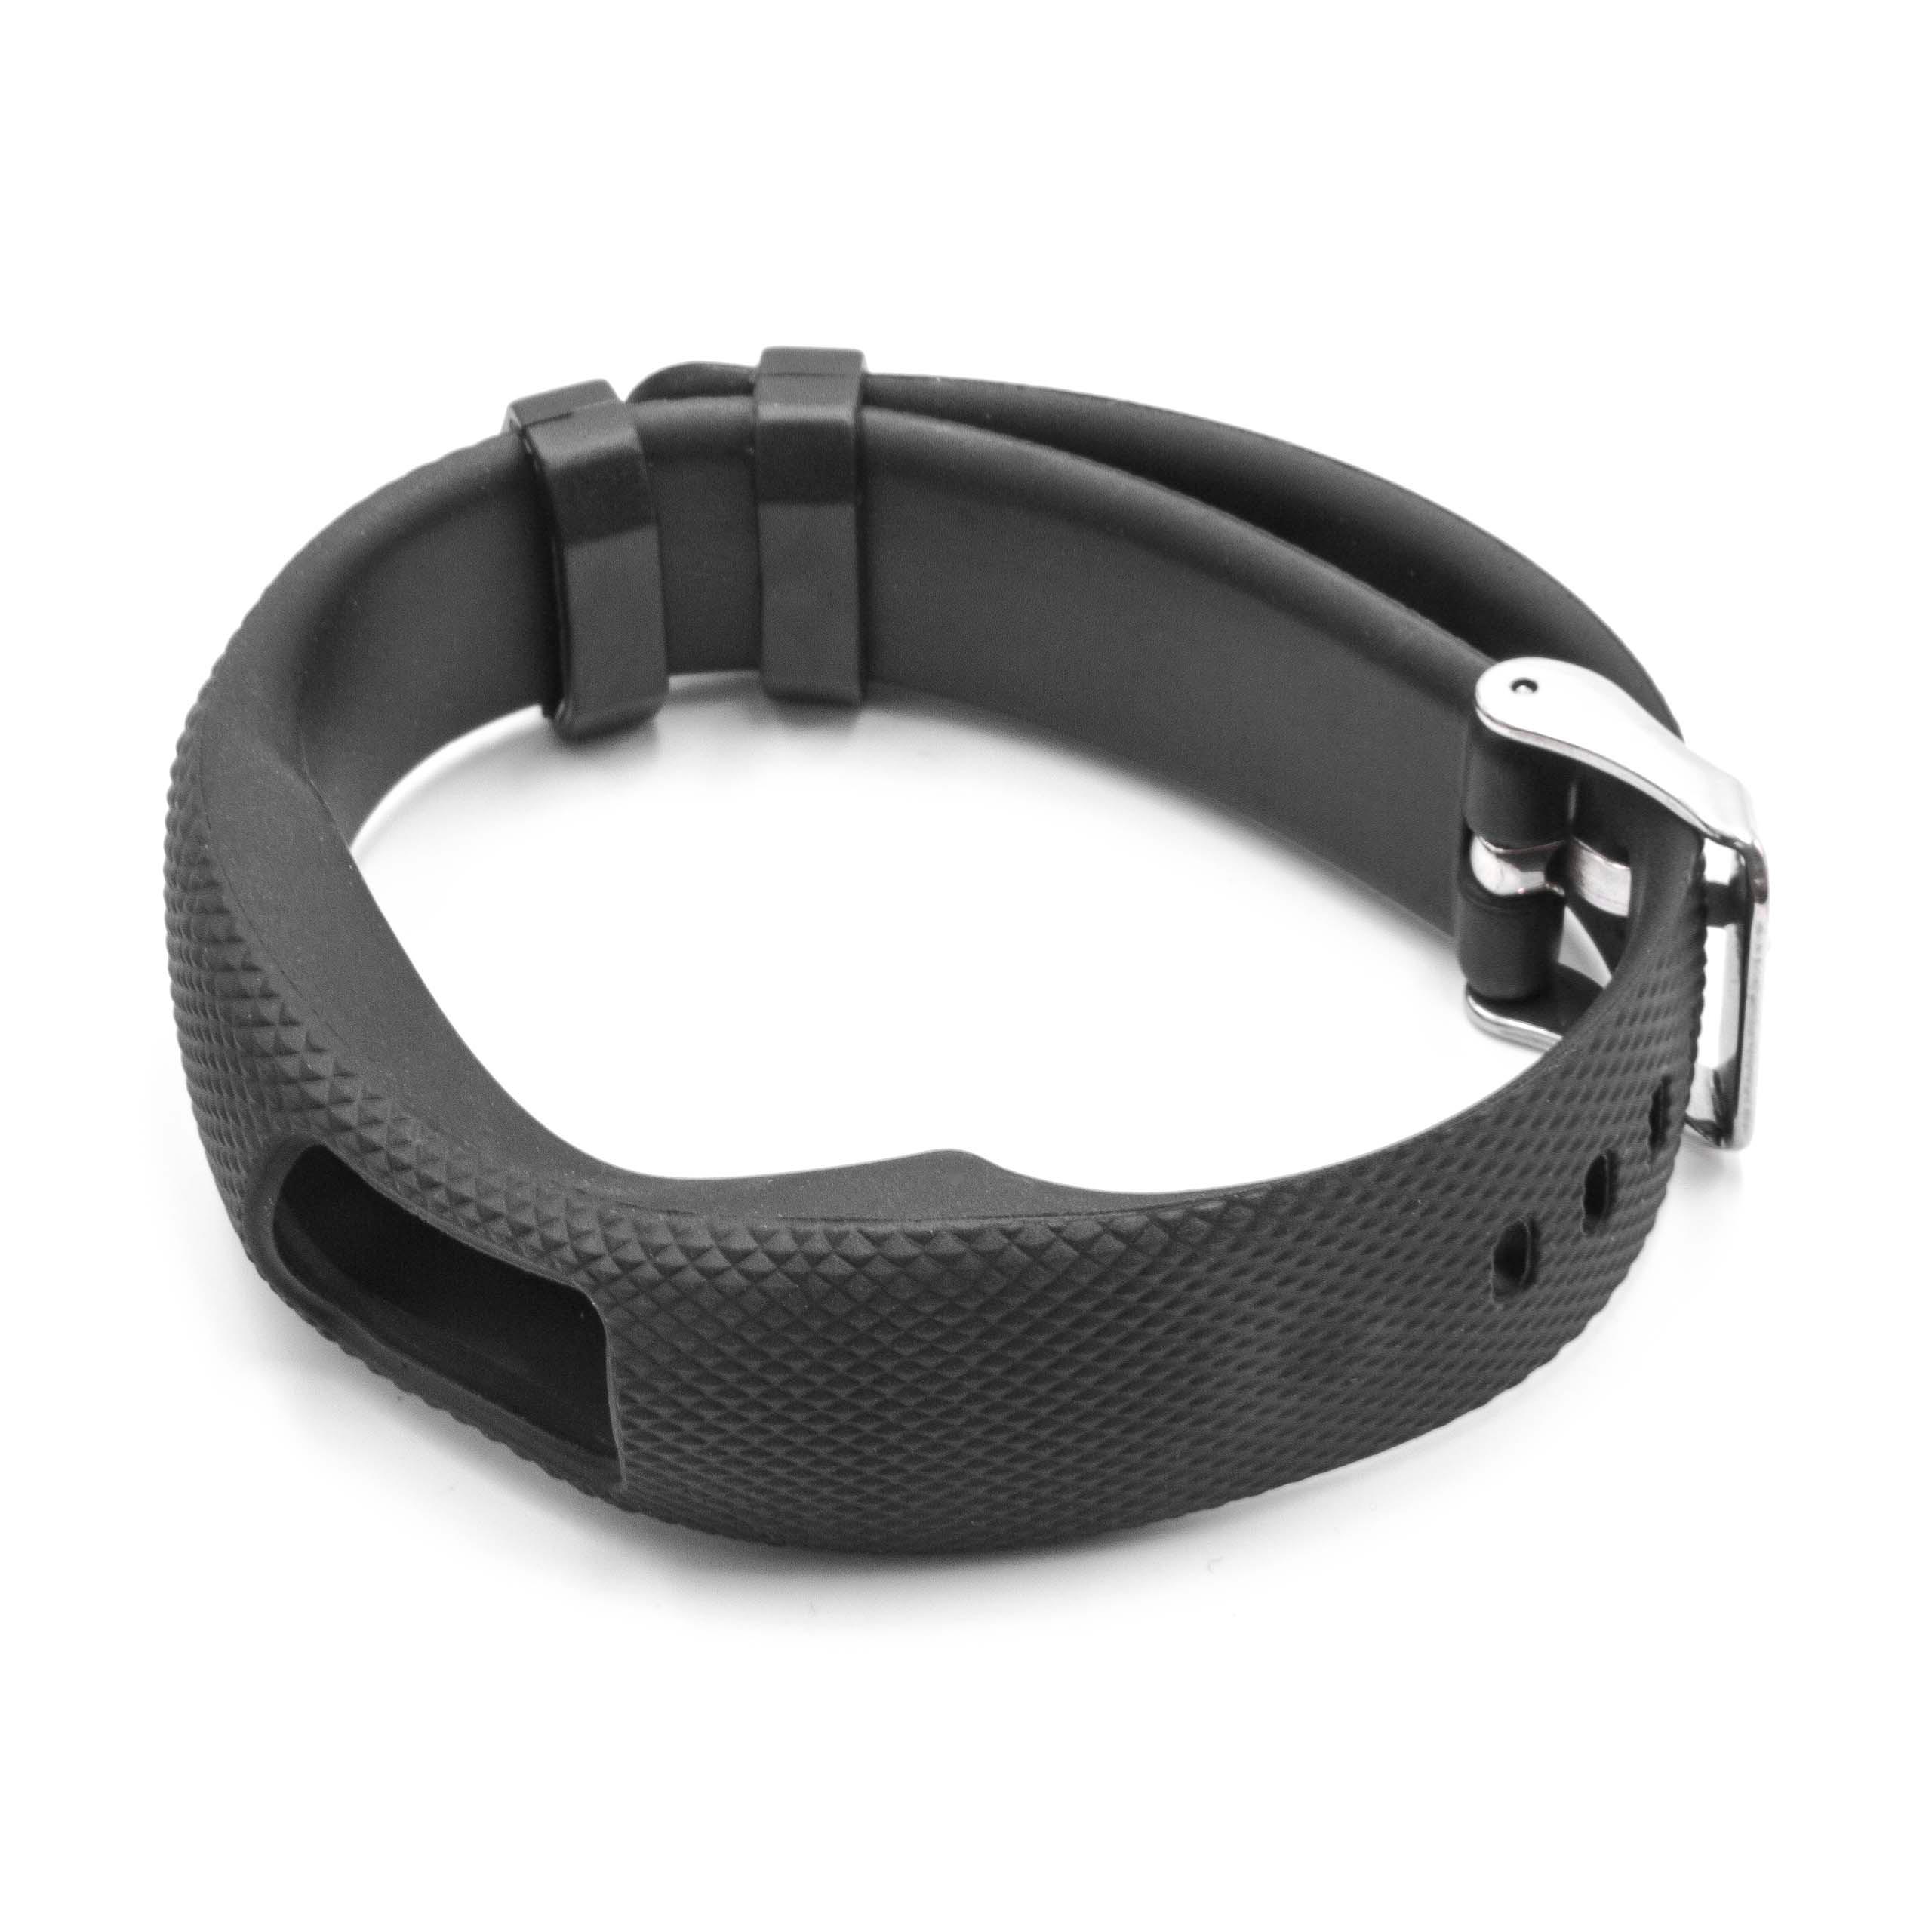 Bracelet pour montre intelligente Garmin Vivofit - 24,5 cm de long, 19,5mm de large, noir